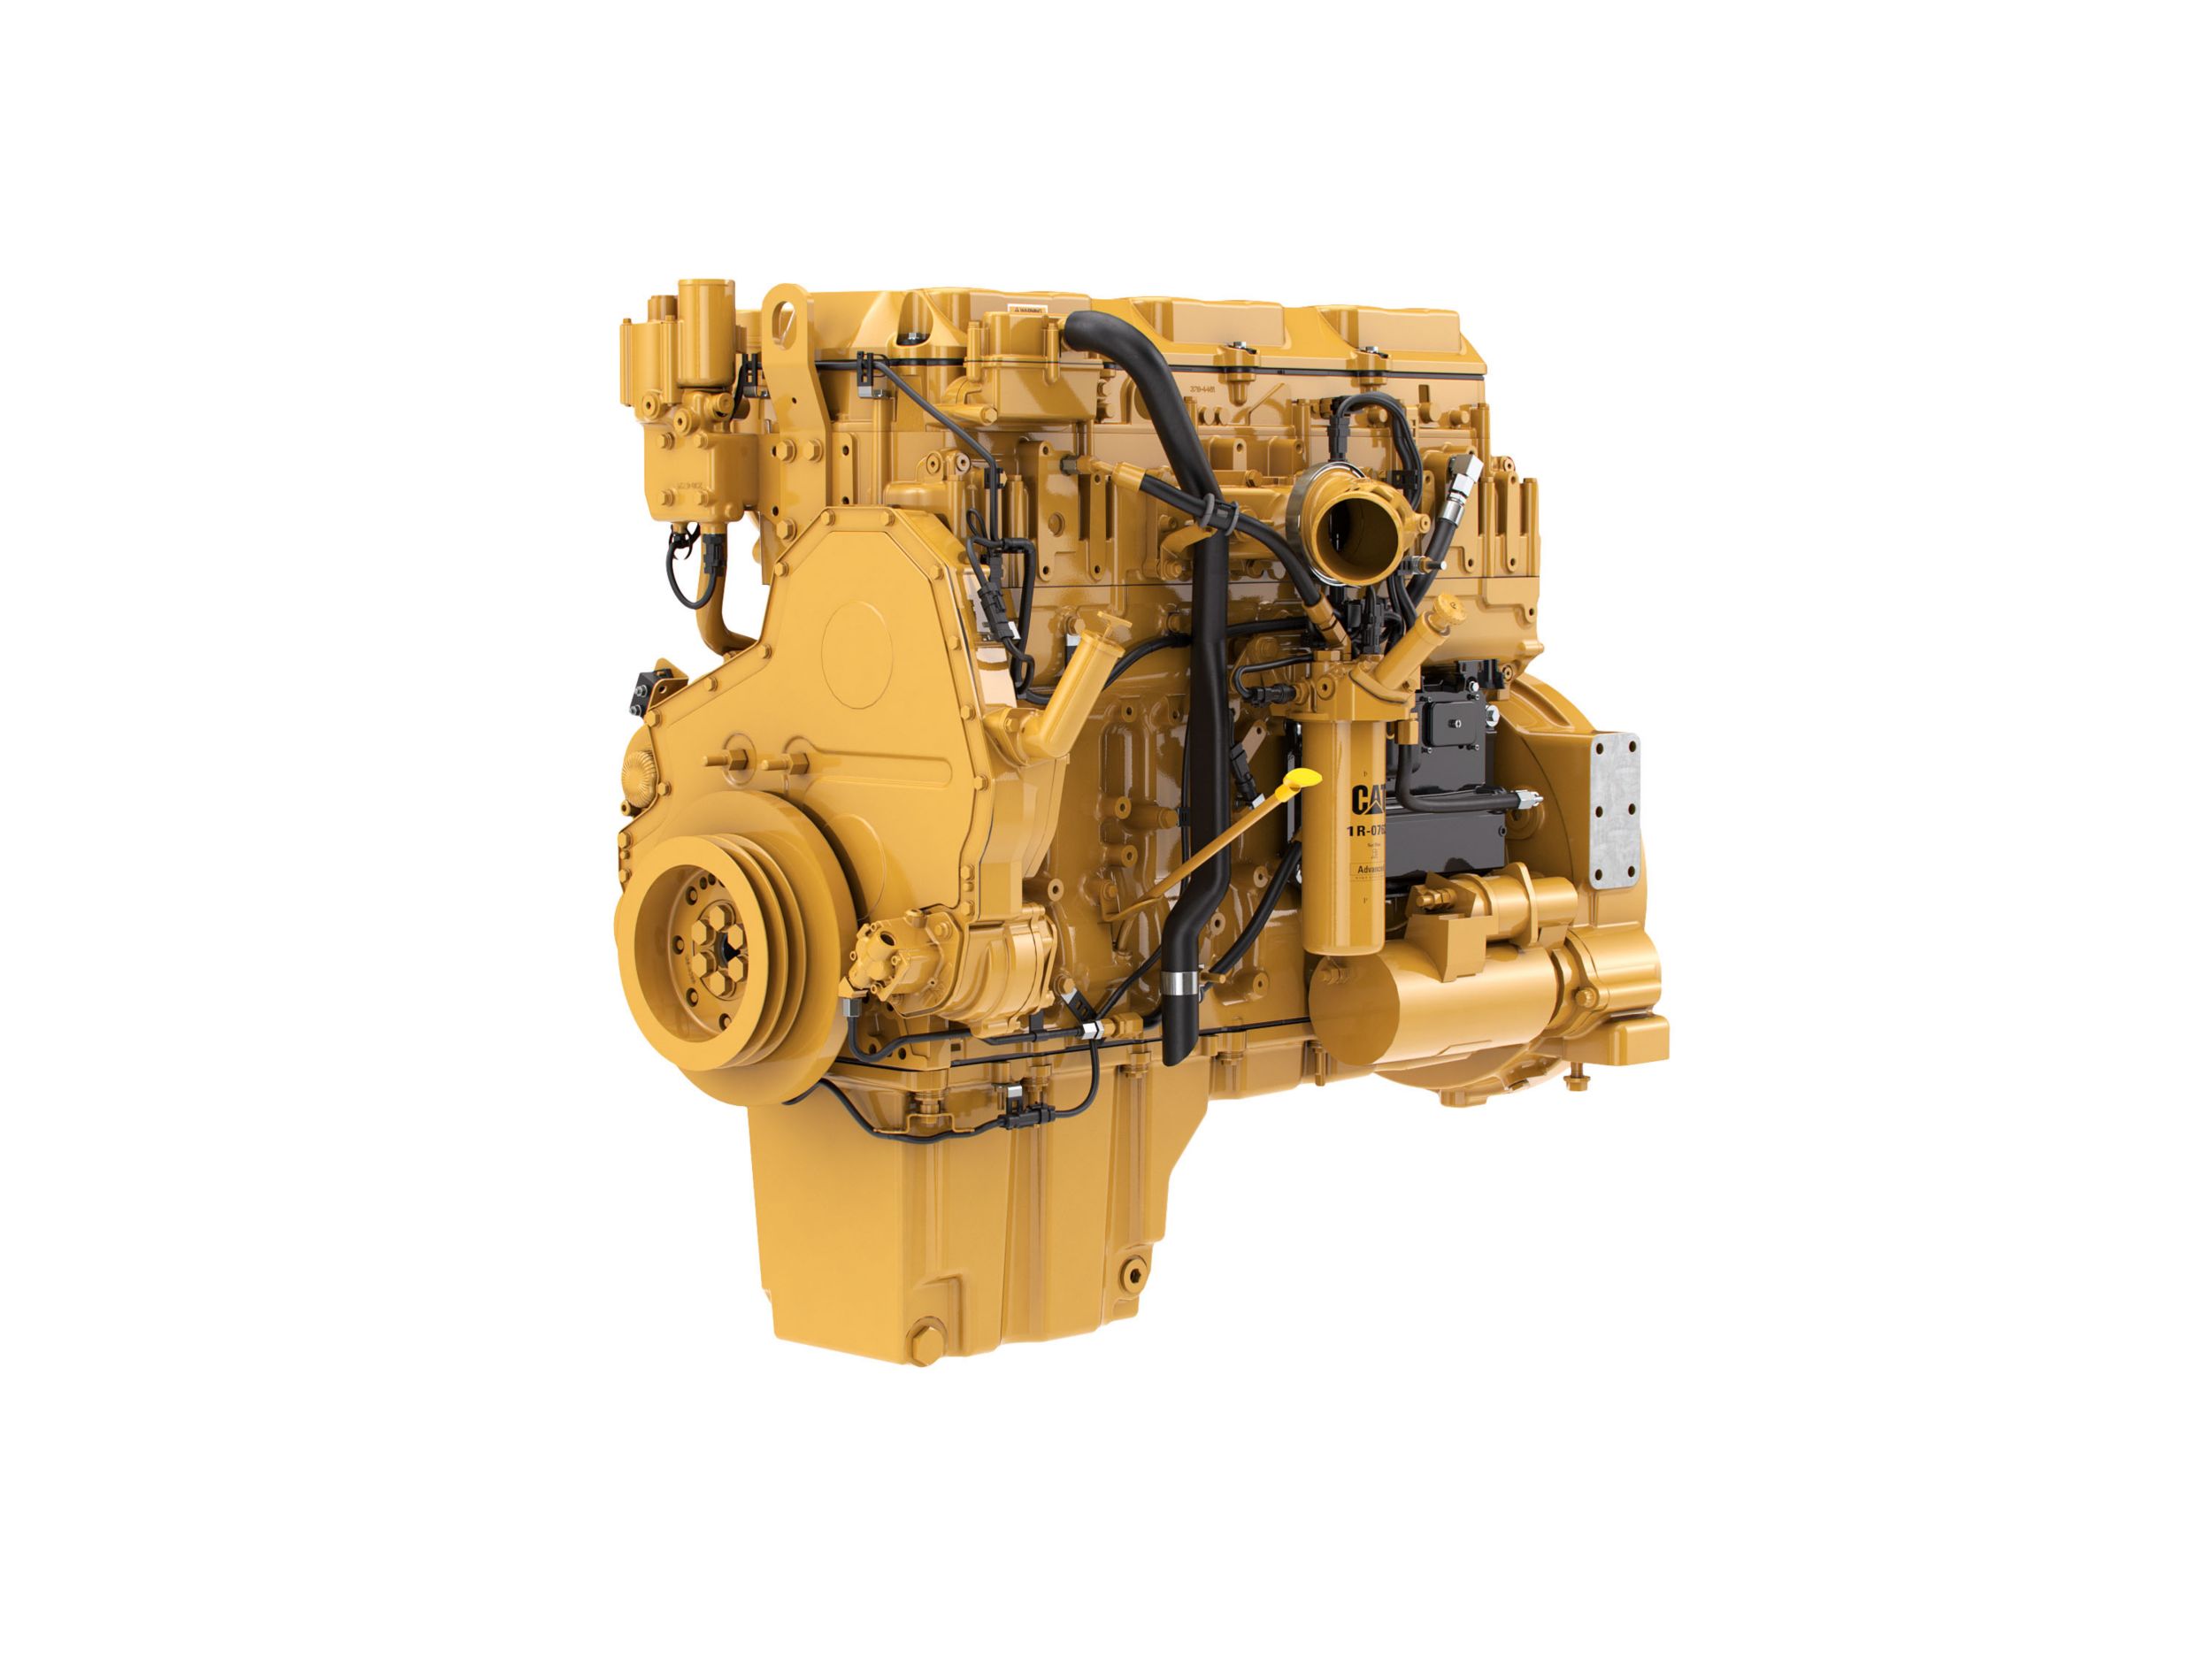 Дизельные двигатели C11 ACERT™ LRC — для стран с низкими экологическими требованиями и регионов, на которые не распространяется действие стандартов.